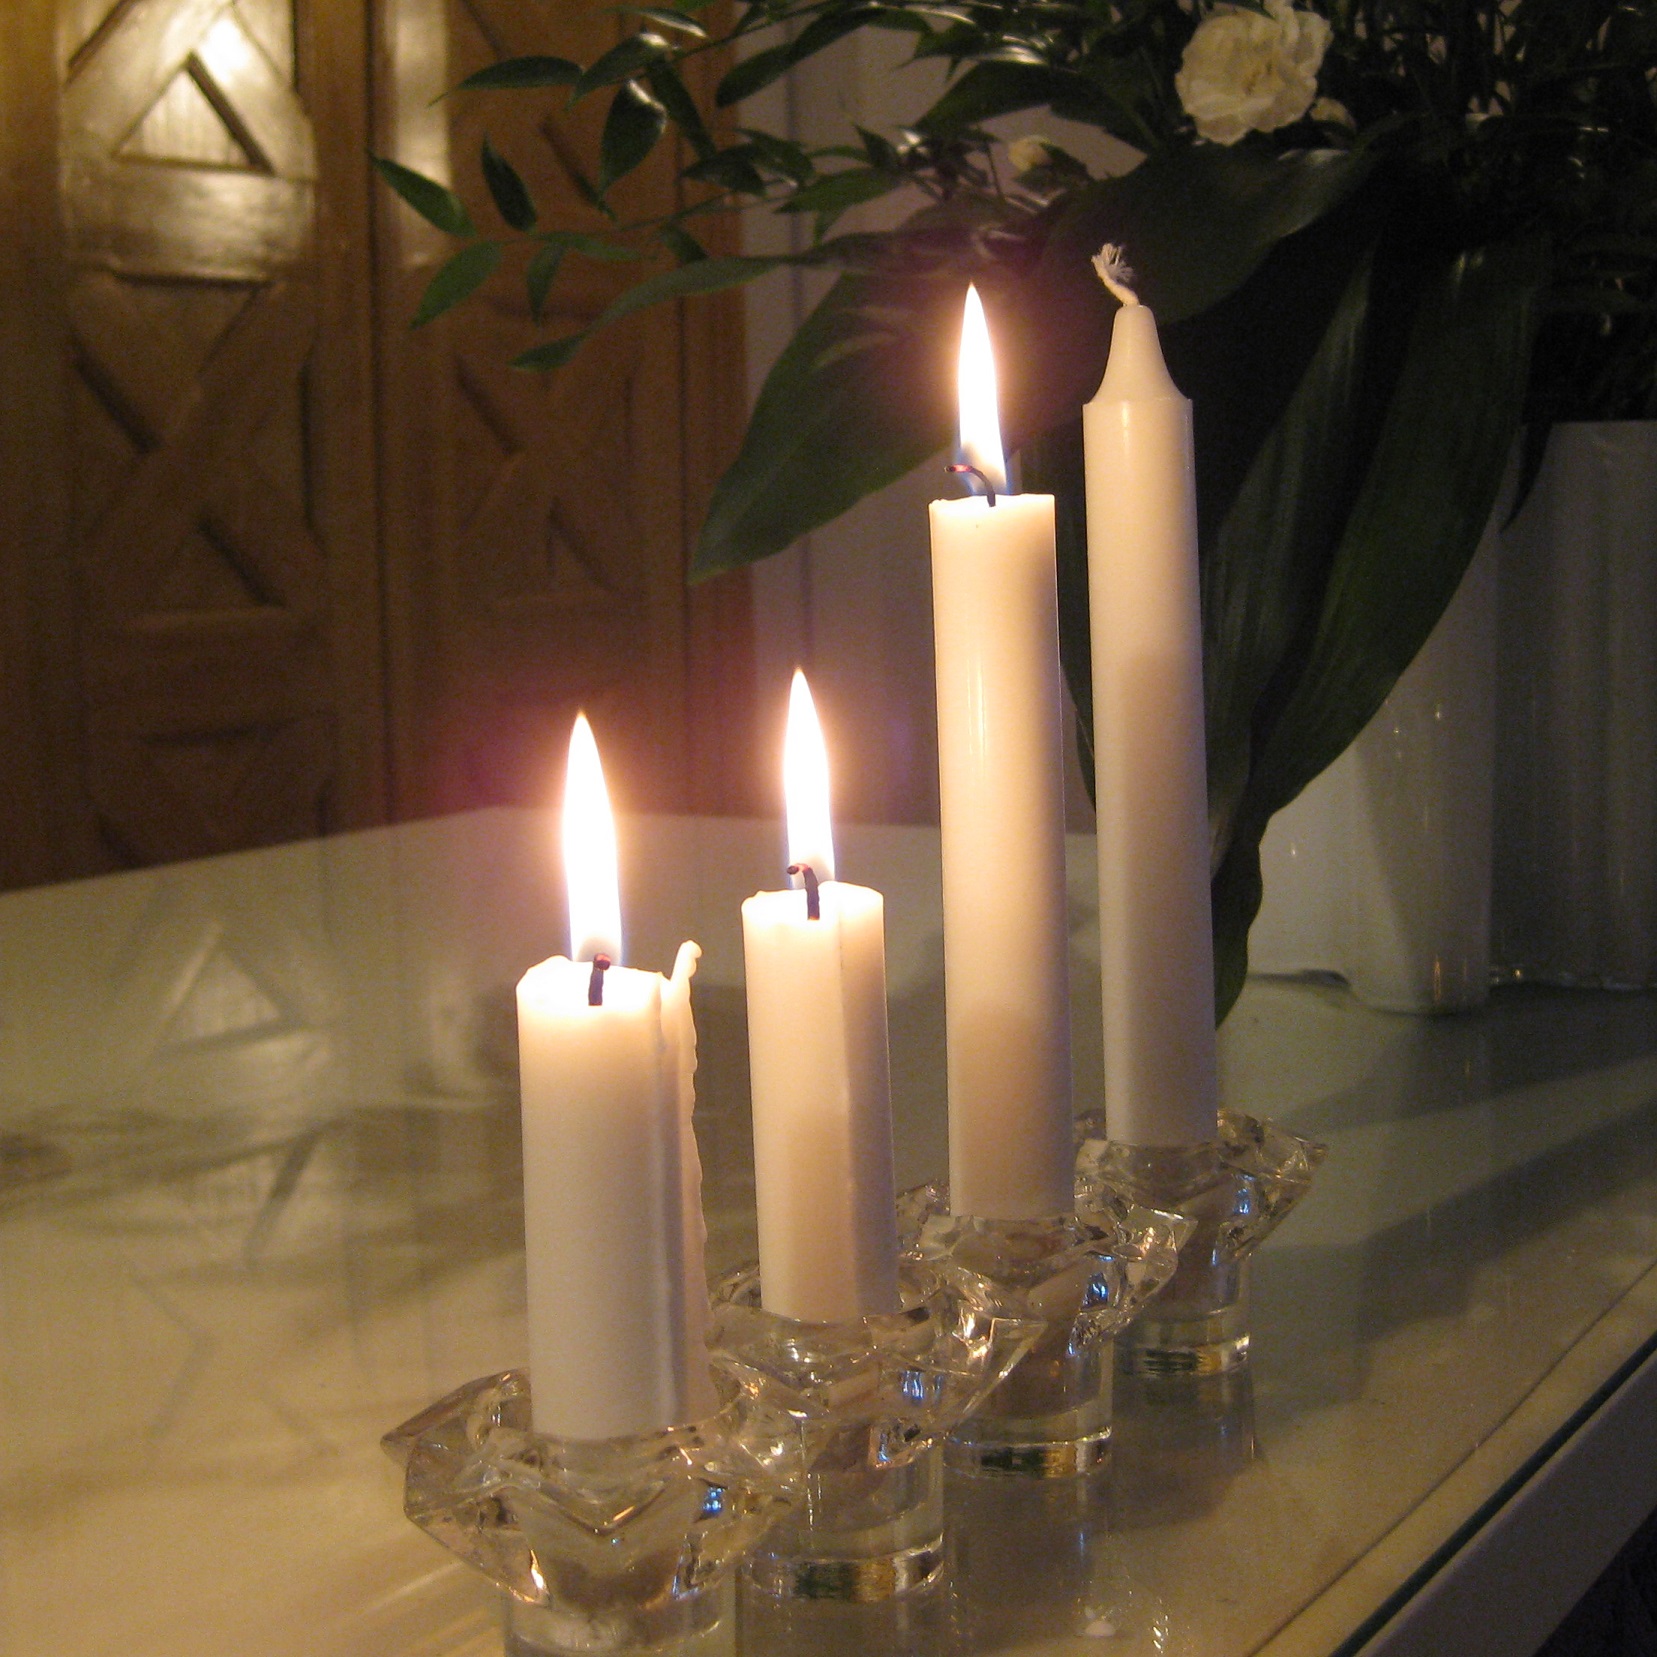 pöydällä rivissä neljä kynttilää, joista kolmessa liekki